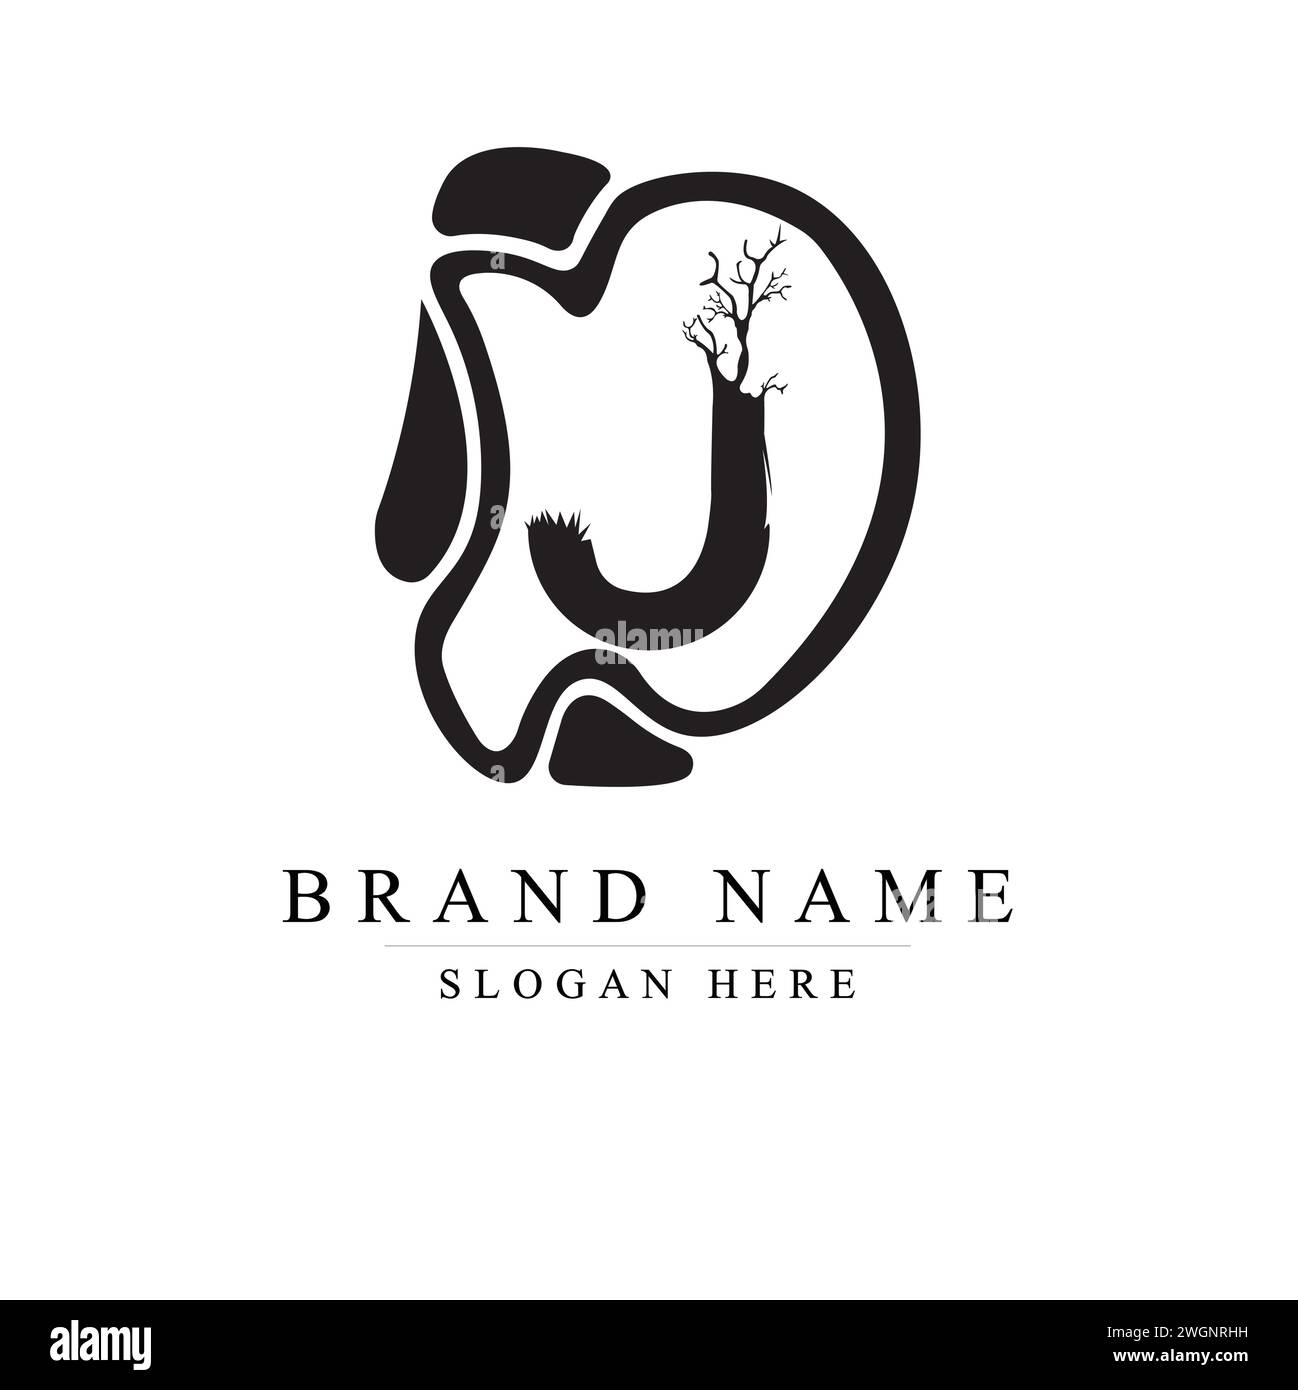 The Tree-Inspired J Logo for Premium Brands, The Tree-Inspired J Logo for Premium Brands Stock Vector